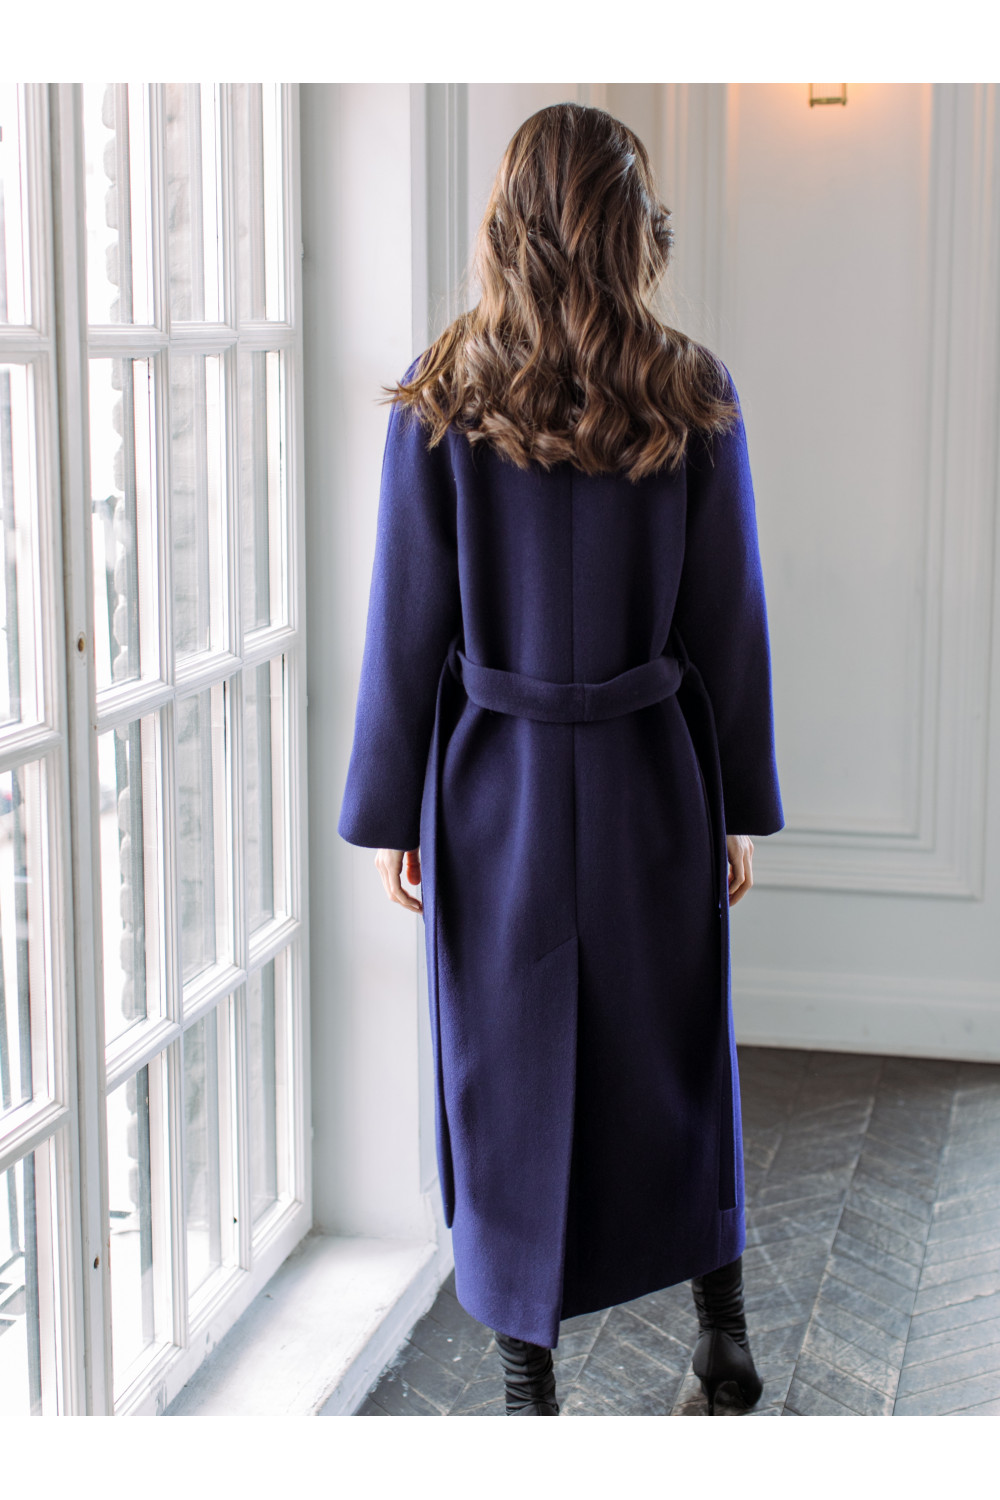 Длинное пальто-халат с накладными карманами AS063m/темно-синий